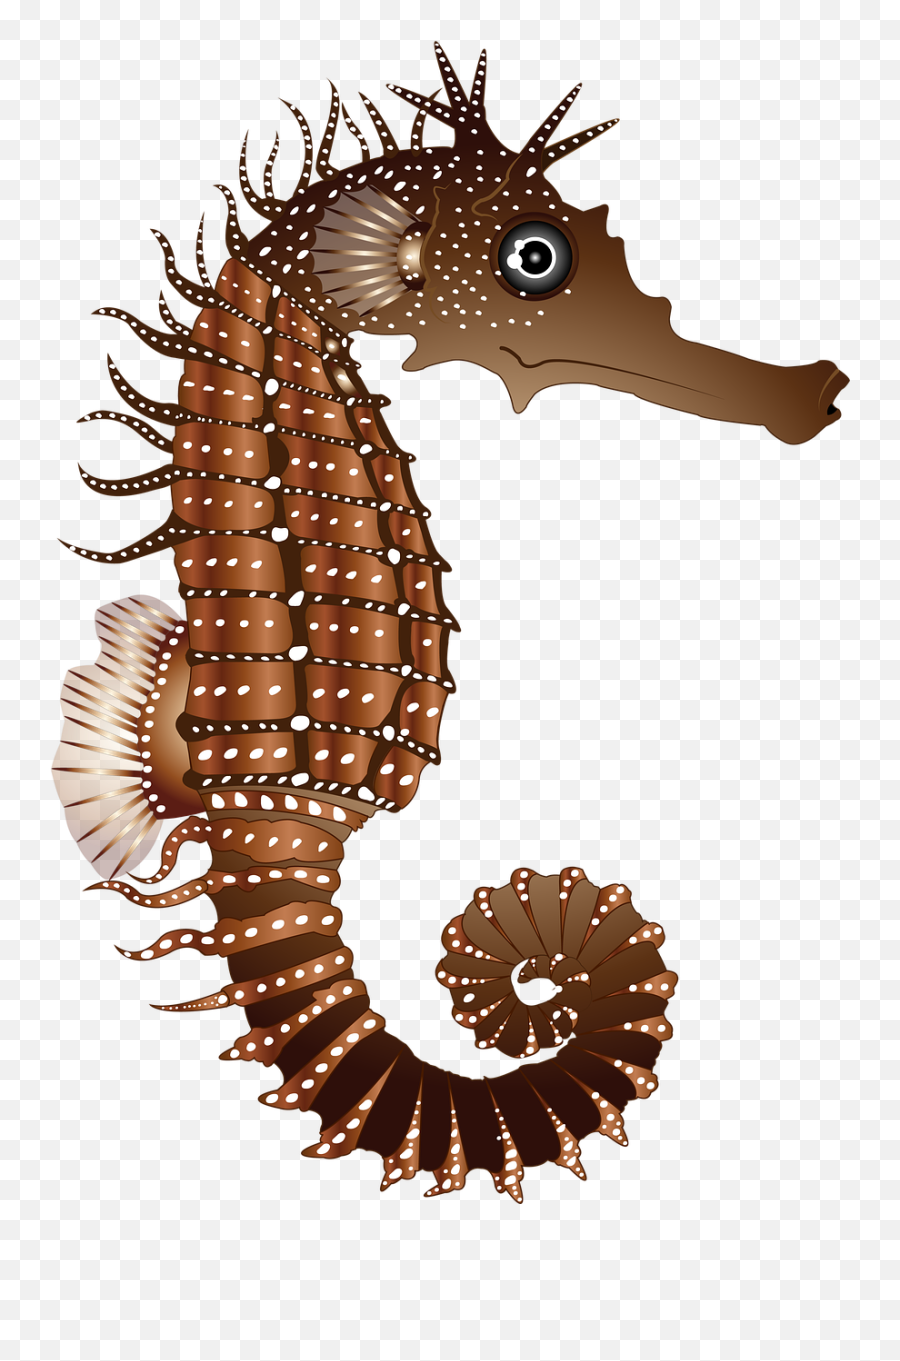 Caballito De Mar Brown Naturaleza - Gambar Kuda Laut Animasi Emoji,Tipo De Espanol Sehorse Emoji